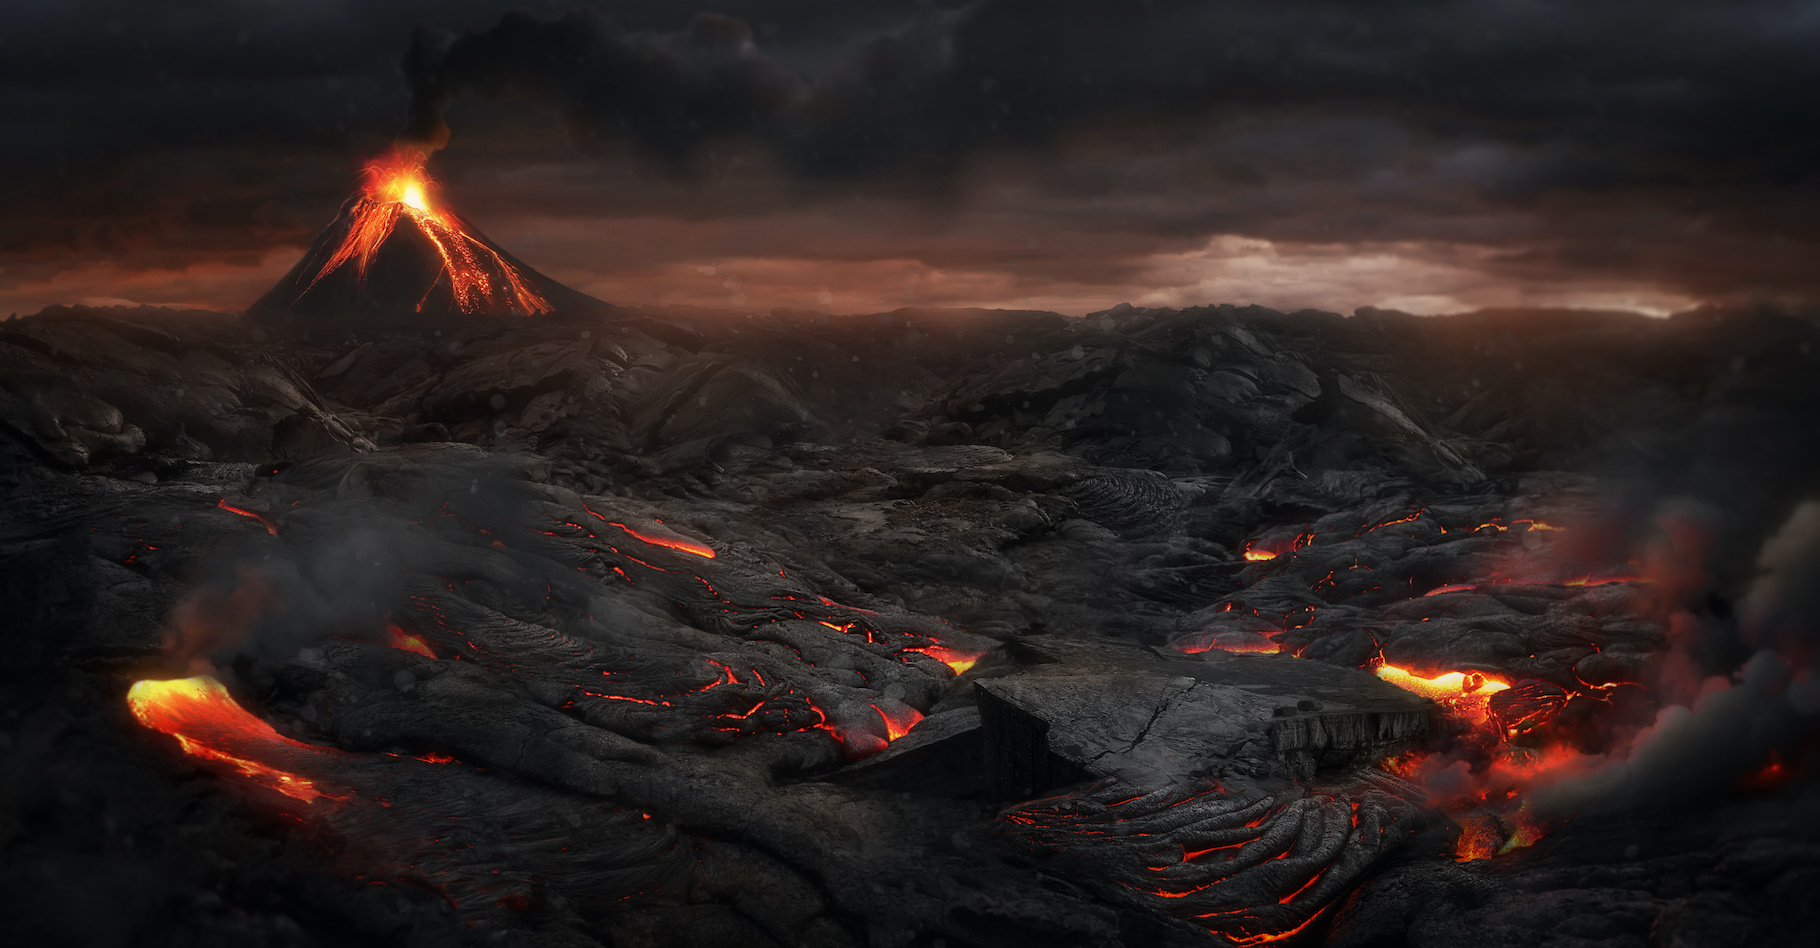 Les grands épanchements basaltiques engendreraient un bref hiver volcanique suivi par un réchauffement du climat. © Jagoush, Adobe Stock